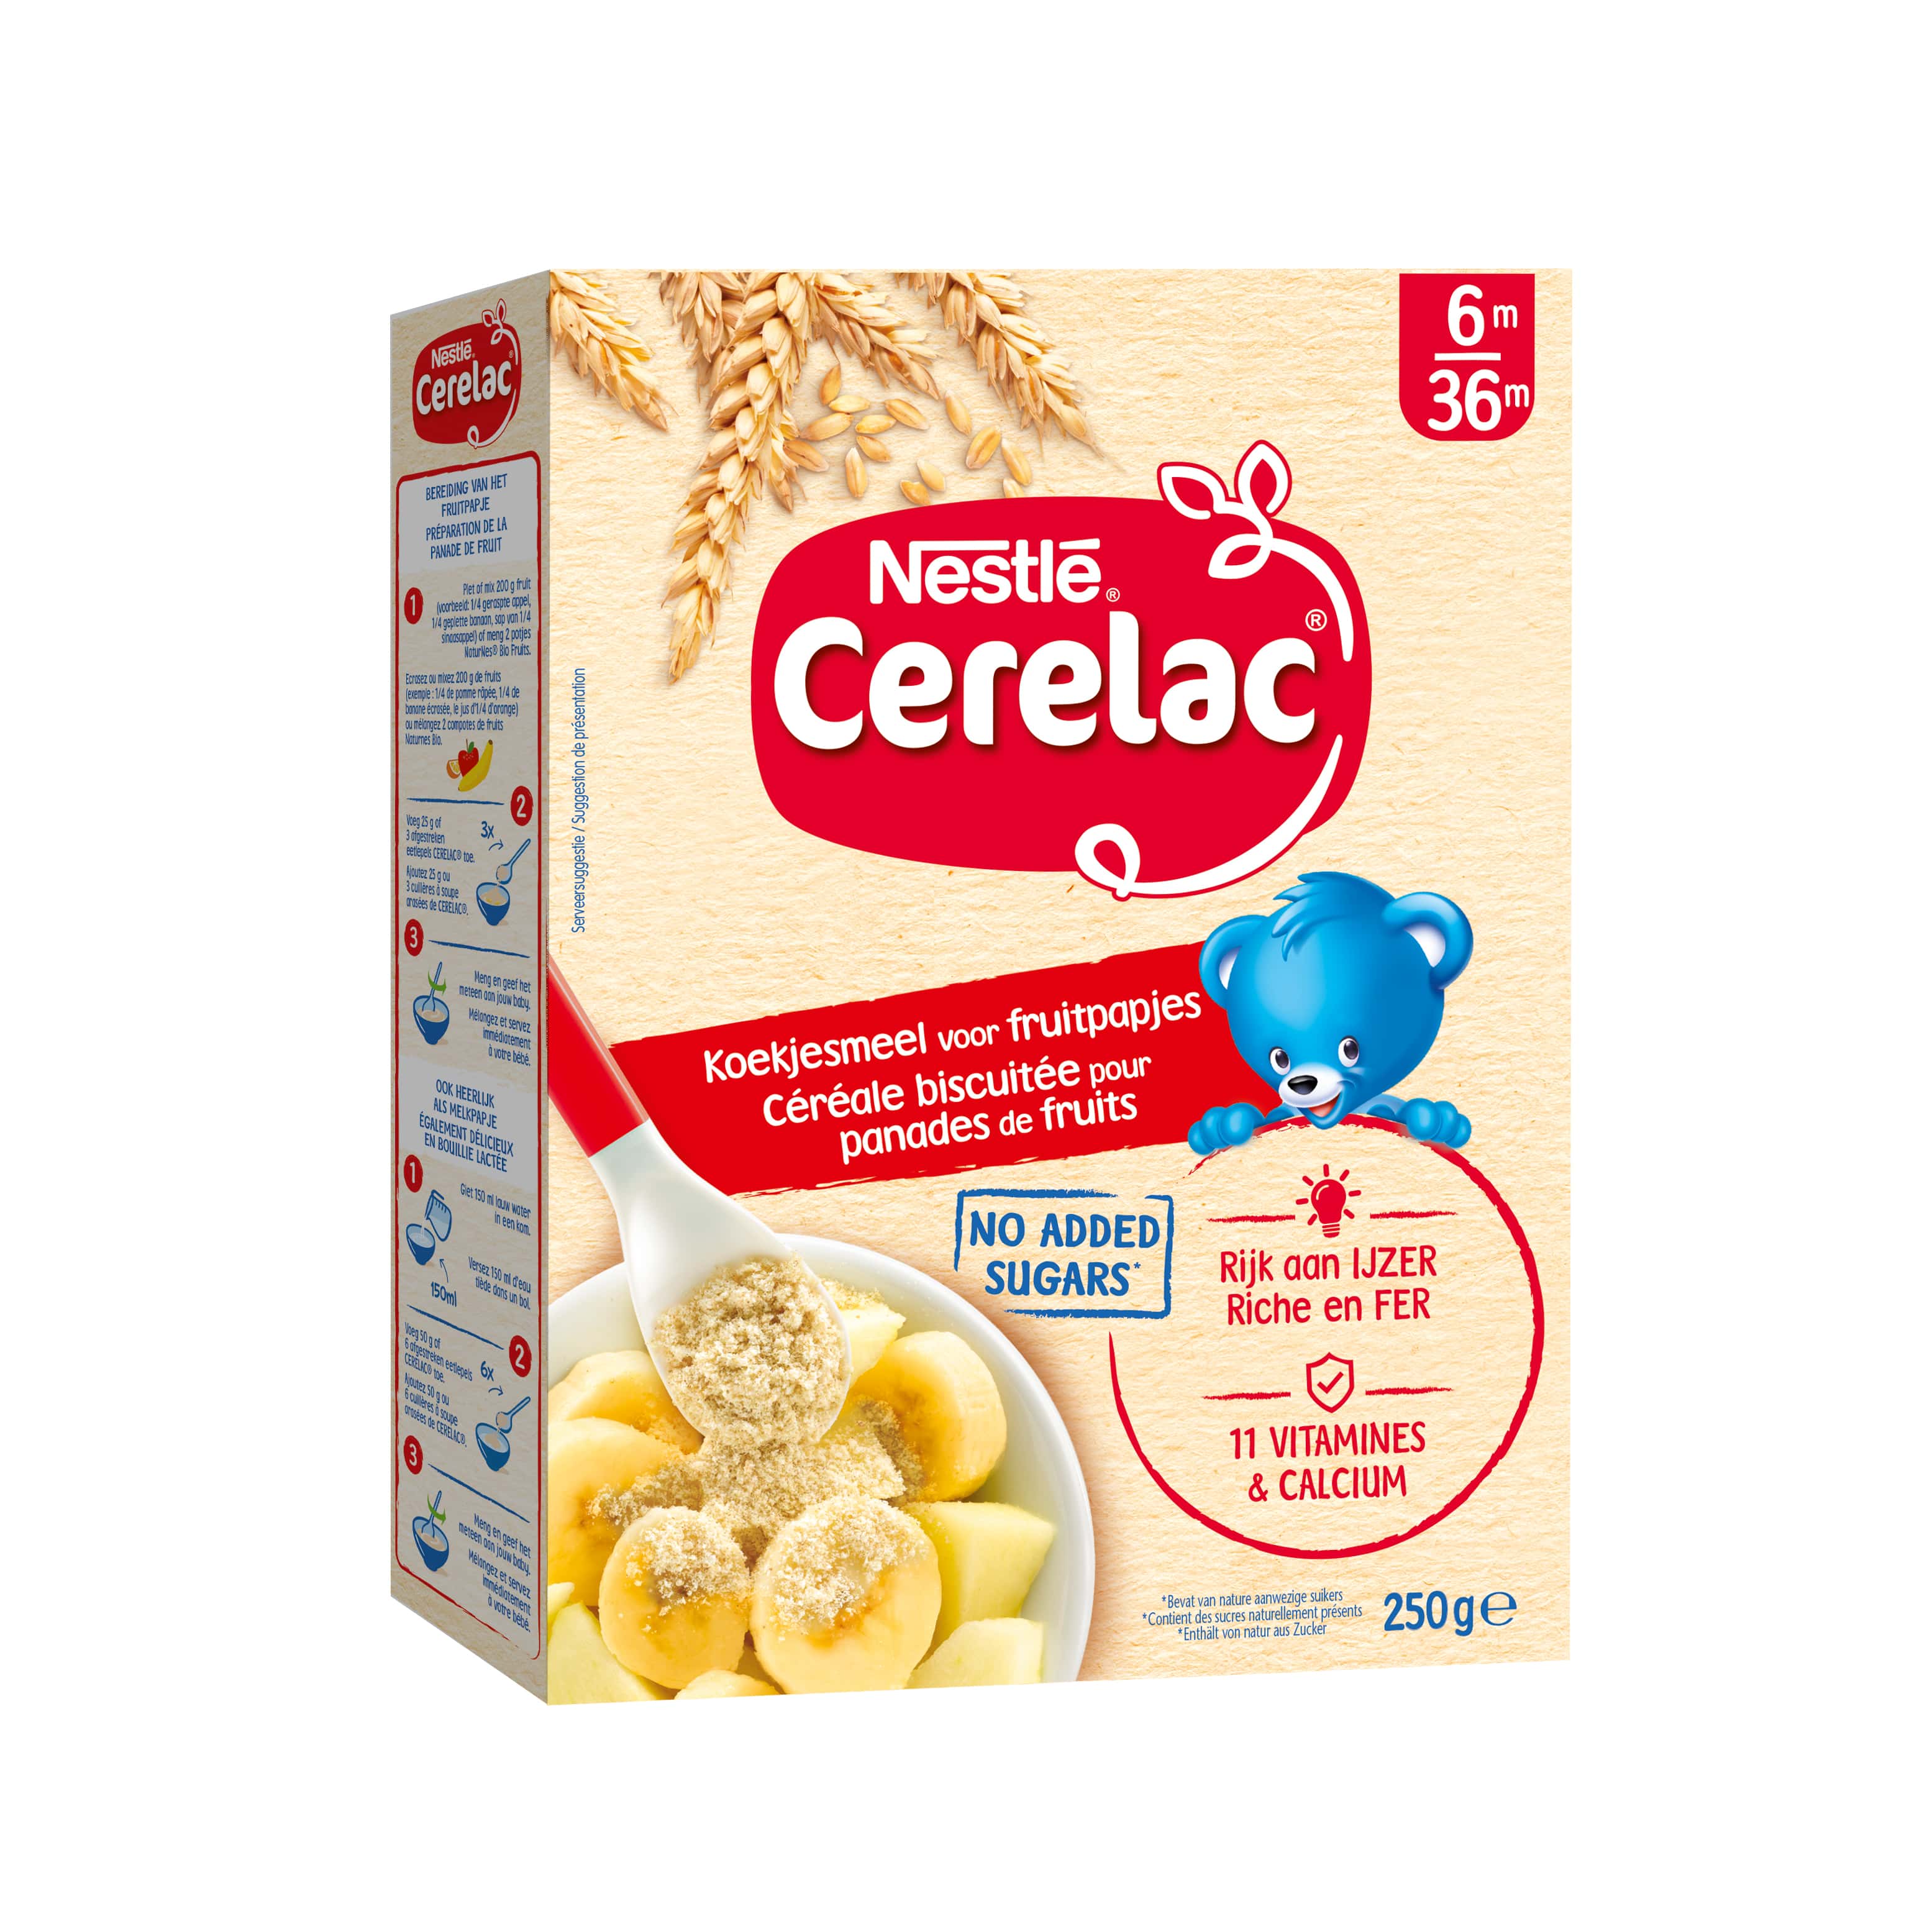 Secrets Du Portugal - Nestlé cerelac Je recommande fortement pour bébé à  partir de 6mois 150ml d'eau et 9 cuillère de cerelac dans un petit bol bien  évidemment !! Bébé adorera je